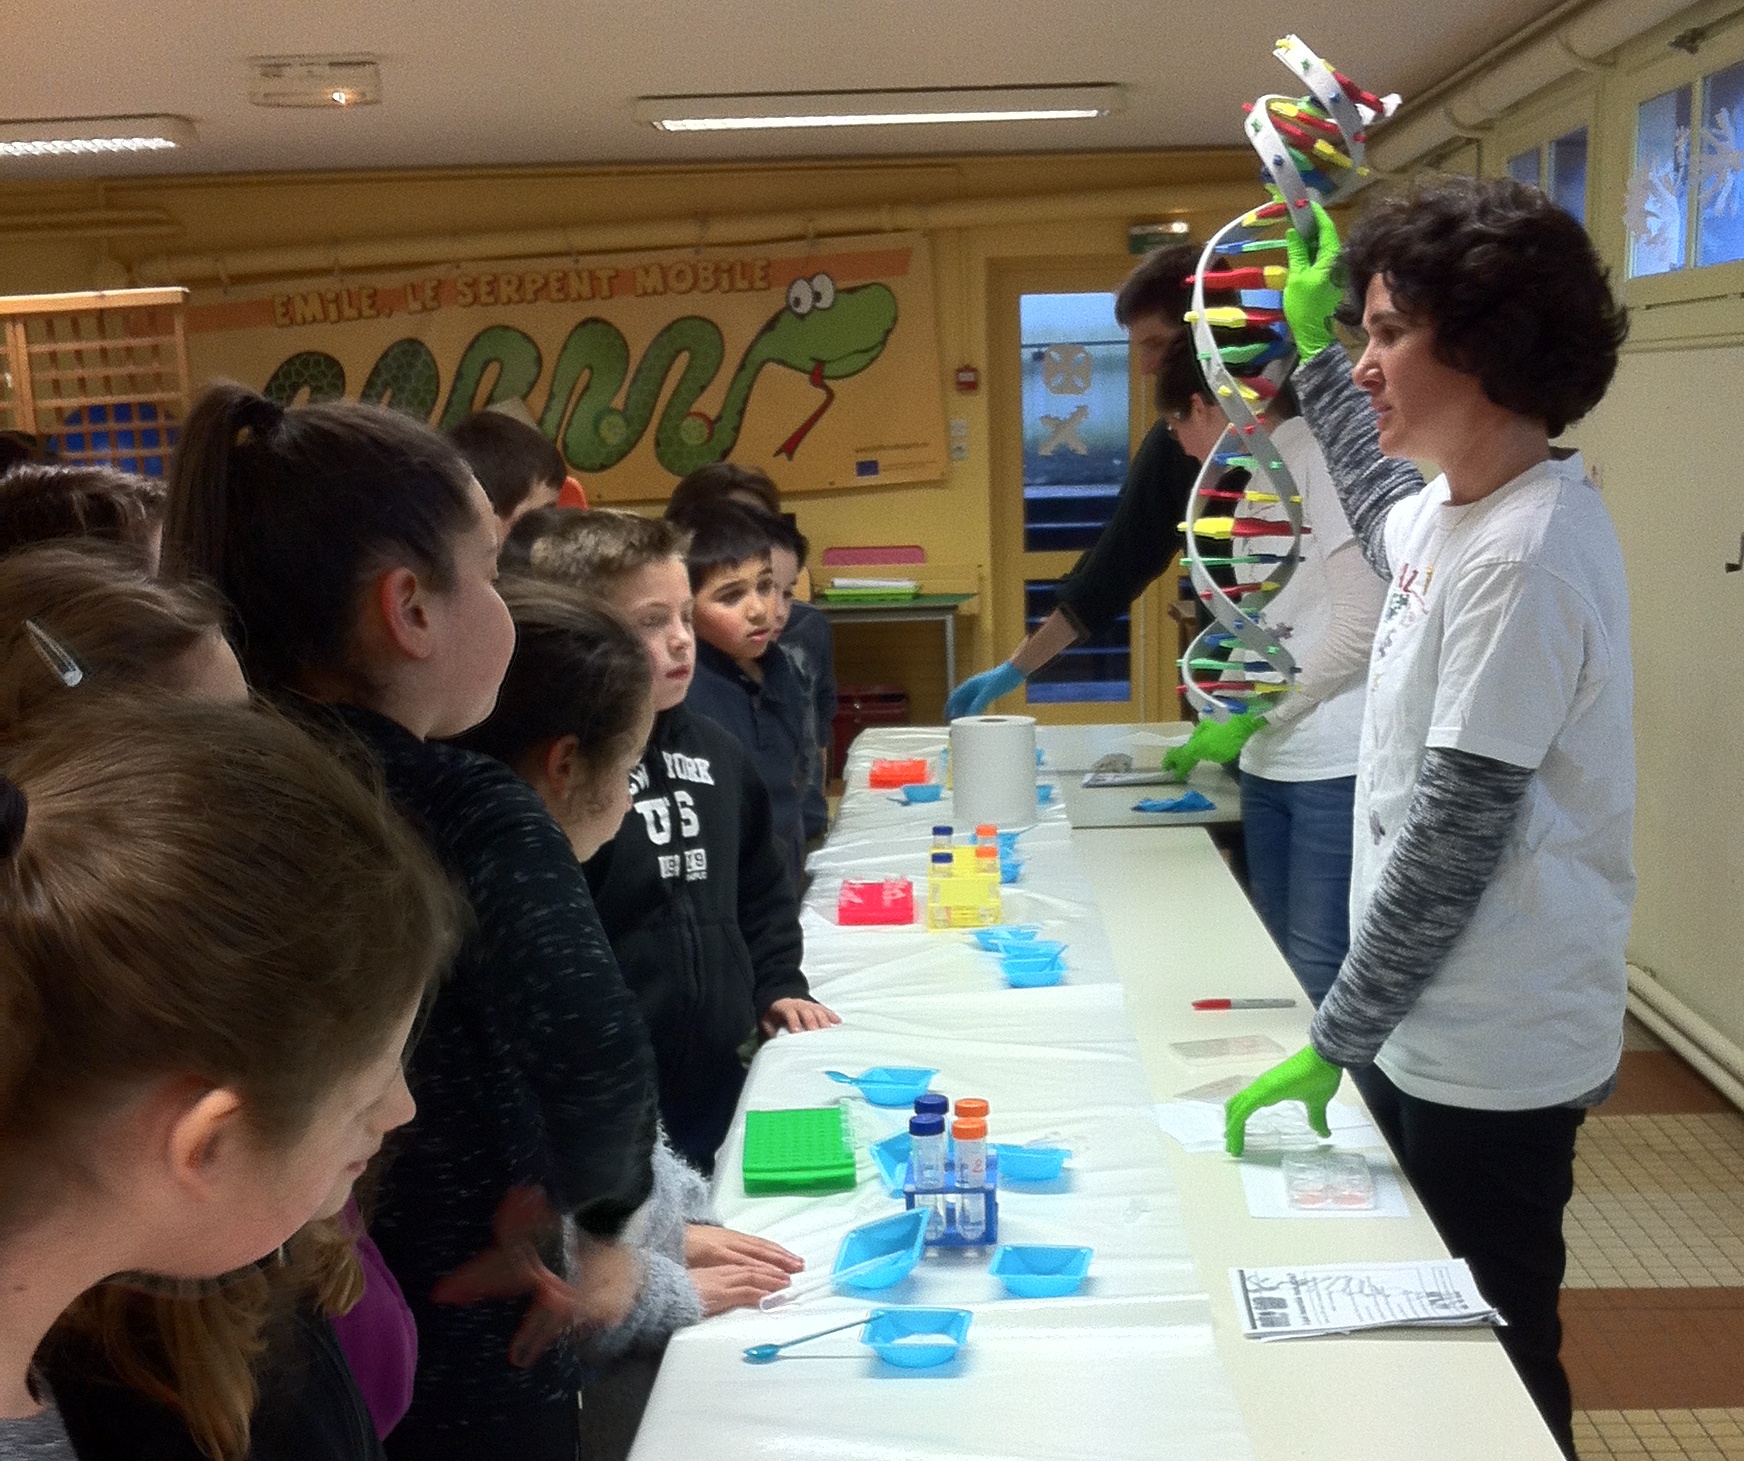 Dans le cadre de la quinzaine des parents   l école une équipe de chercheurs et médecins est venu expliquer l ADN et les chromosomes aux enfants de l école